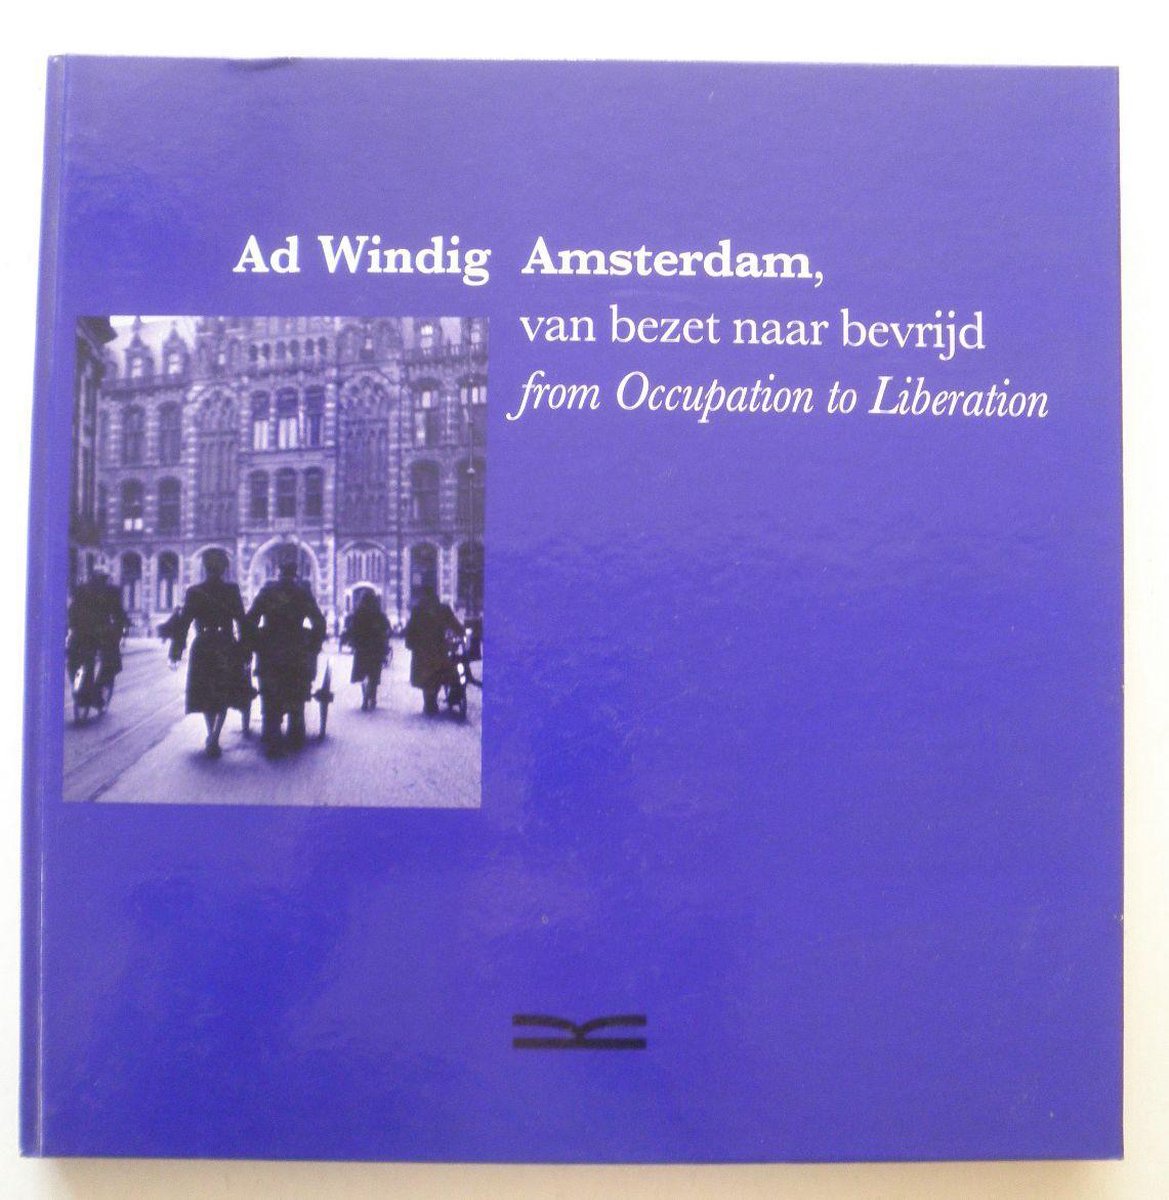 Amsterdam, van bezet naar bevrijd Amsterdam, from occupation to liberation